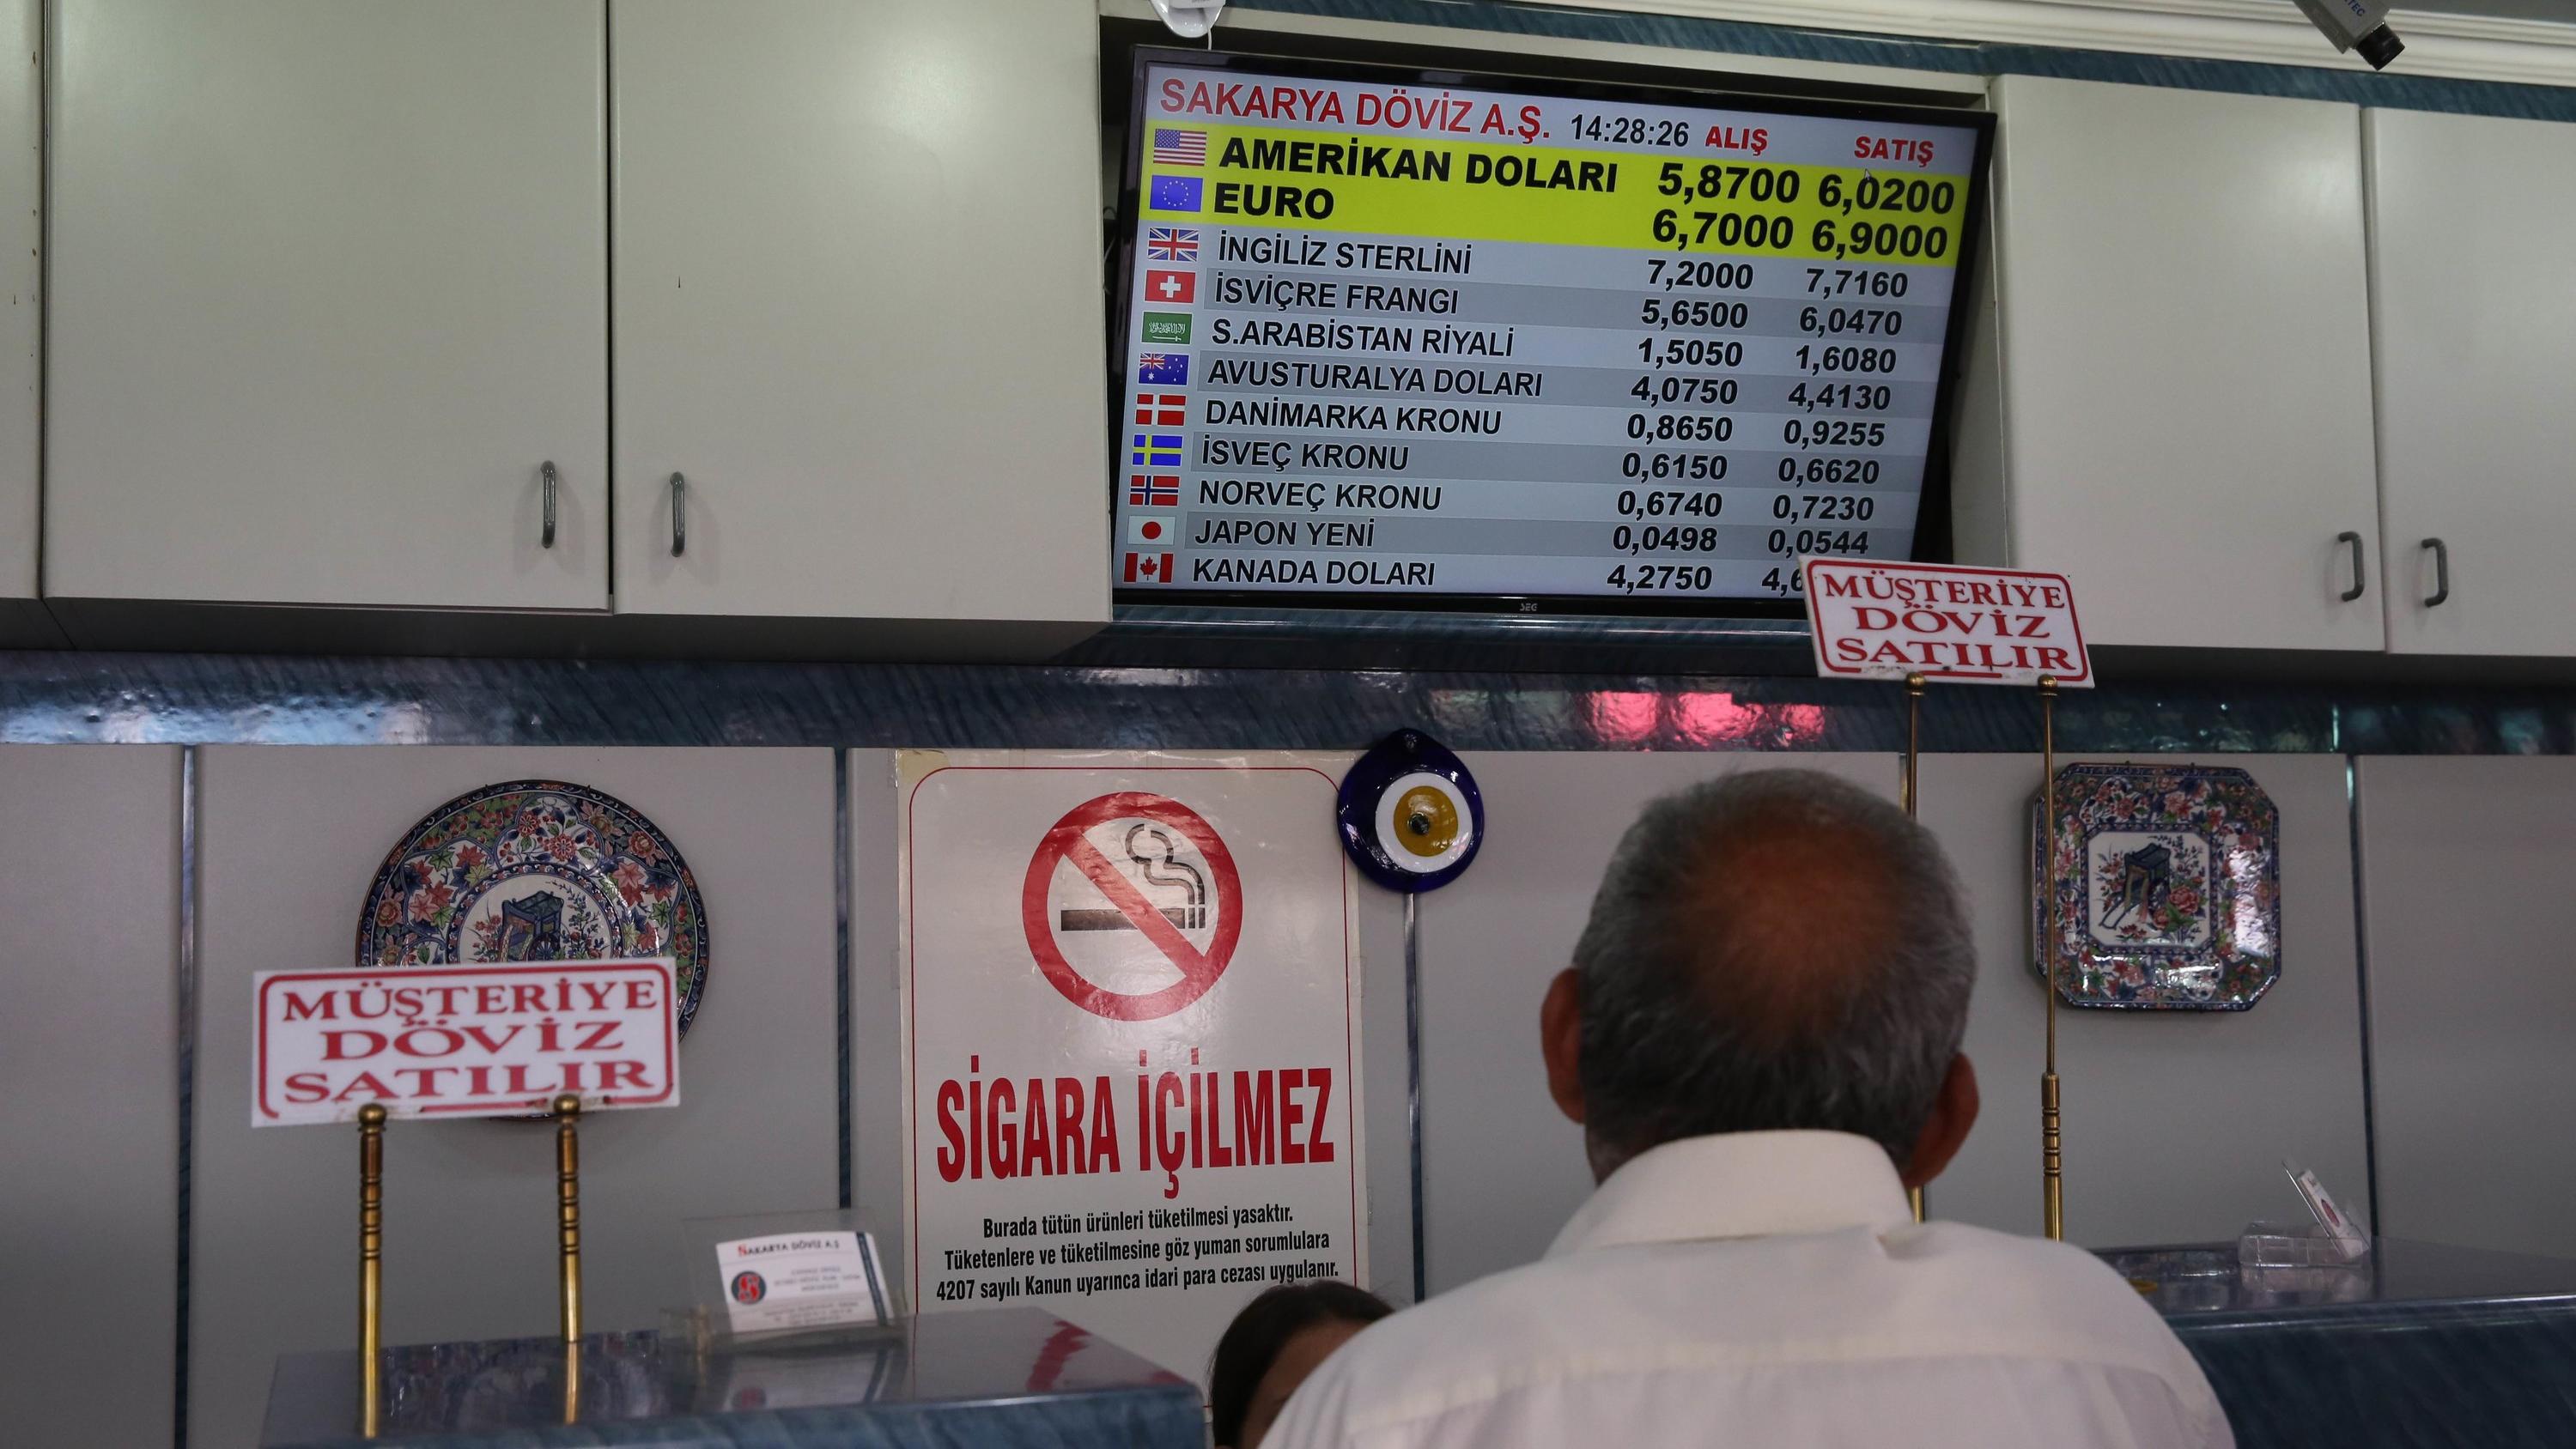 10.08.2018, Türkei, Ankara: Ein Mitarbeiter einer Wechselstube in der türkischen Hauptstadt beobachtet Wechselkurse auf einem Bildschirm. Nach einer neuen Eskalation zwischen der Türkei und den USA hat sich der Verfall der türkischen Landeswährung Li